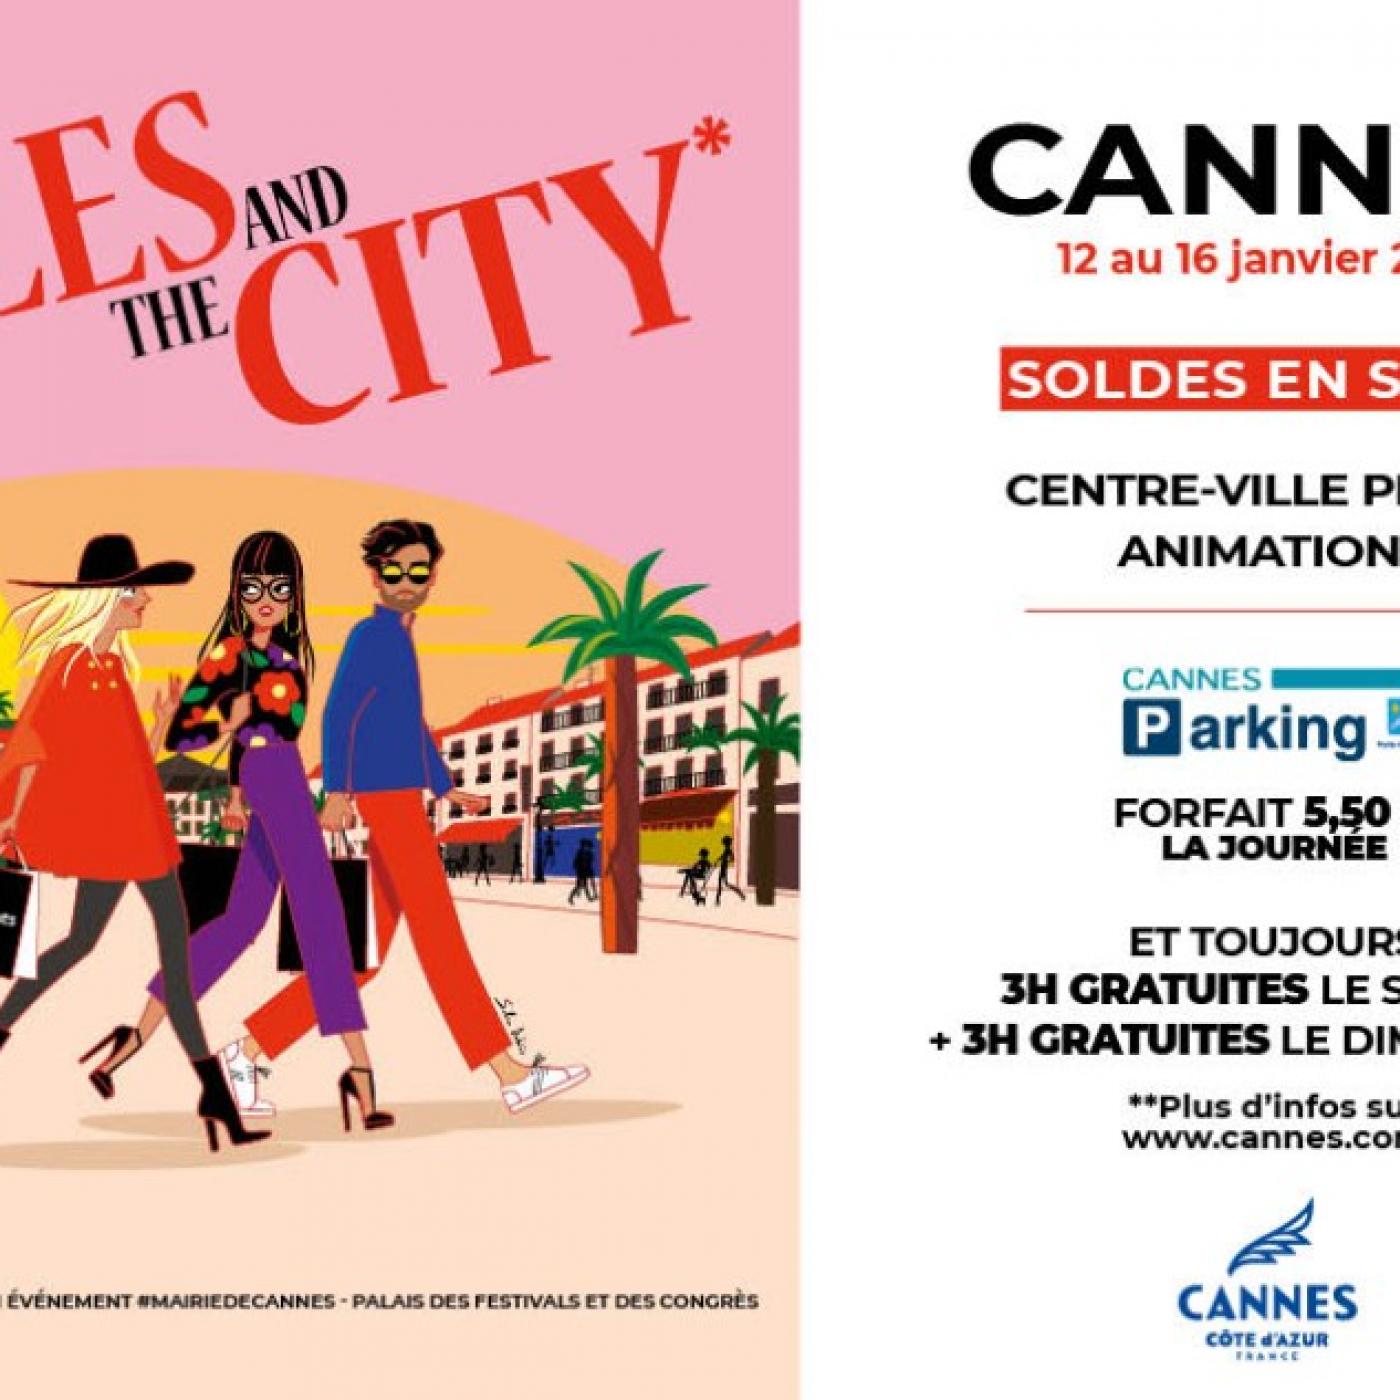 Sales and the City : Les Soldes d’hiver à Cannes